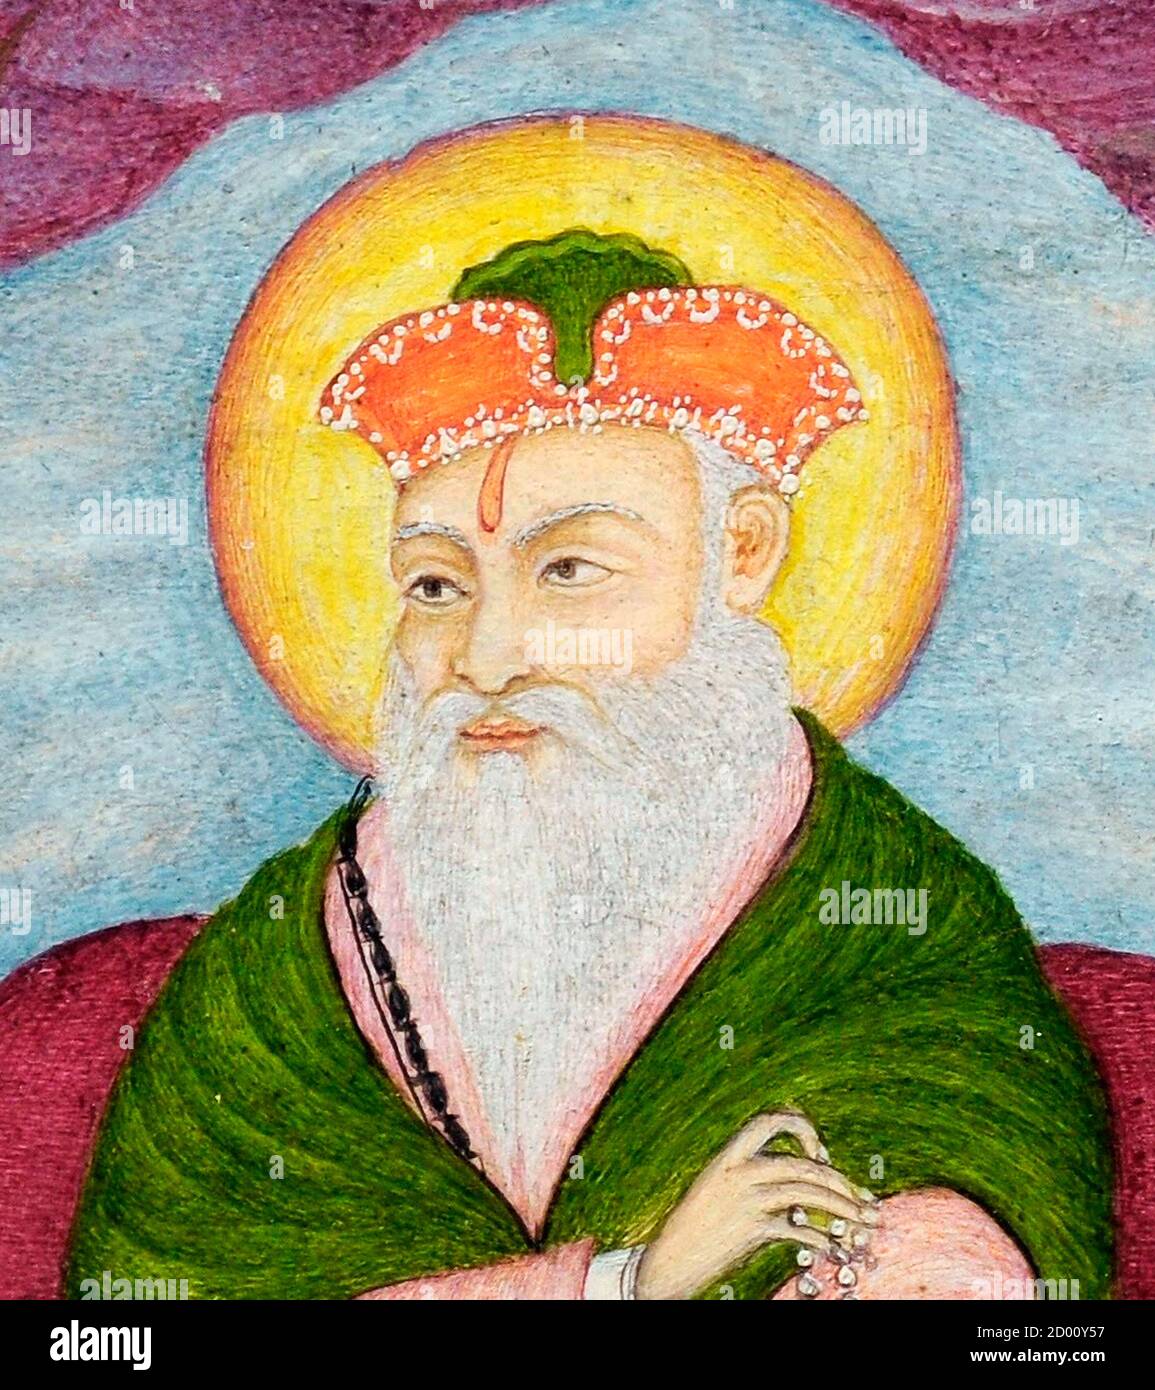 Portrait de Guru Nanak Dev, peinture, pigments naturels sur papier, c.1800-1825, école sikh. Guru Nanak a été le premier Guru sikh et le fondateur du Sikhisme. Banque D'Images